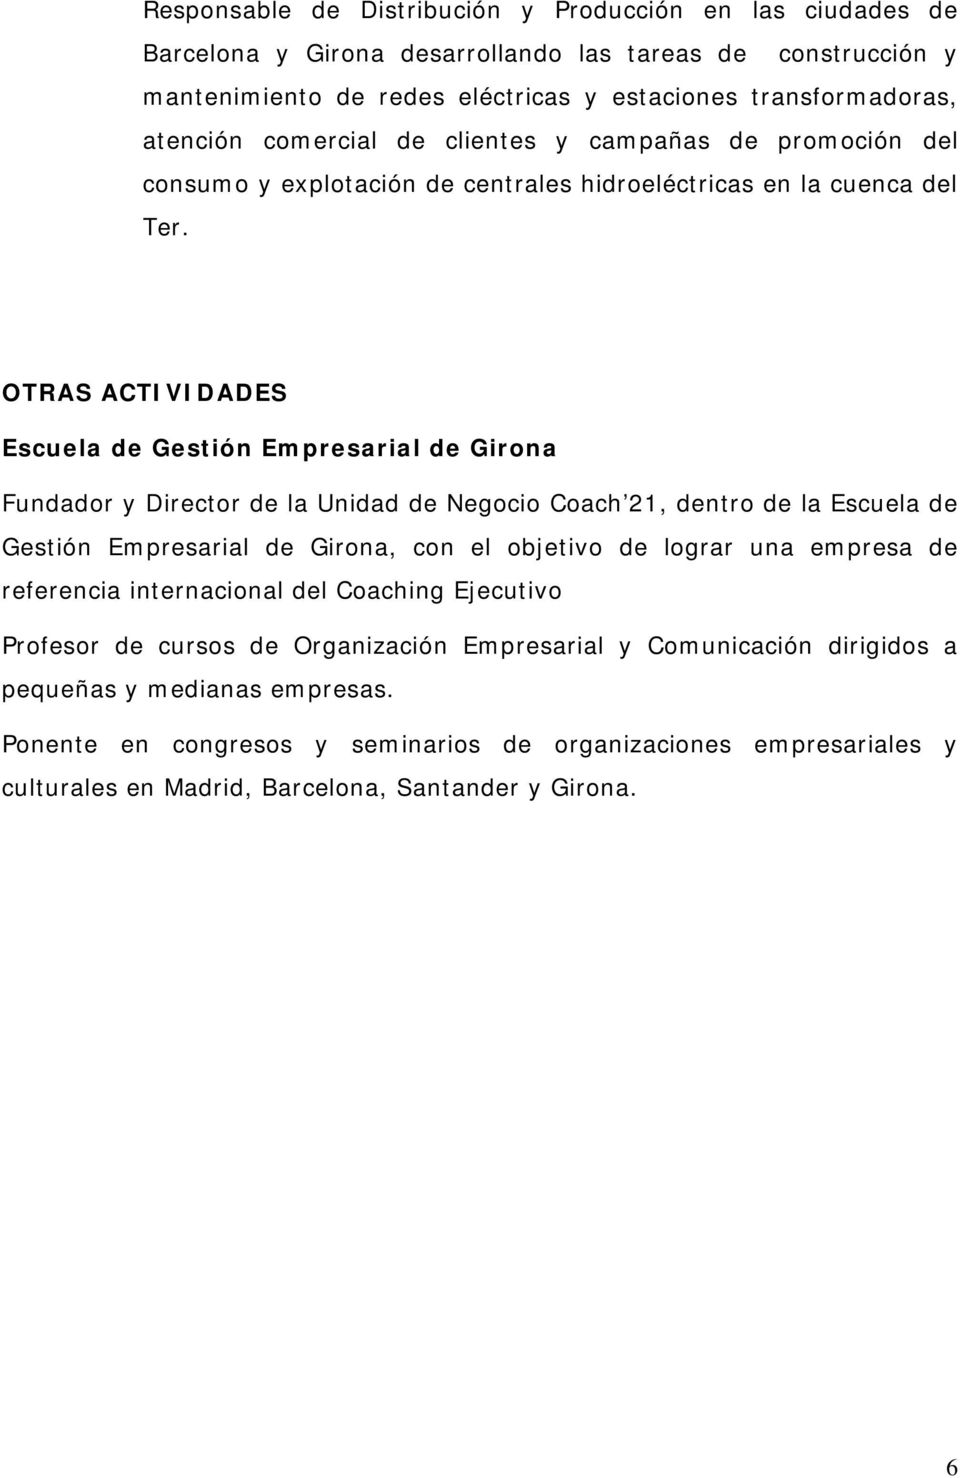 OTRAS ACTIVIDADES Escuela de Gestión Empresarial de Girona Fundador y Director de la Unidad de Negocio Coach 21, dentro de la Escuela de Gestión Empresarial de Girona, con el objetivo de lograr una